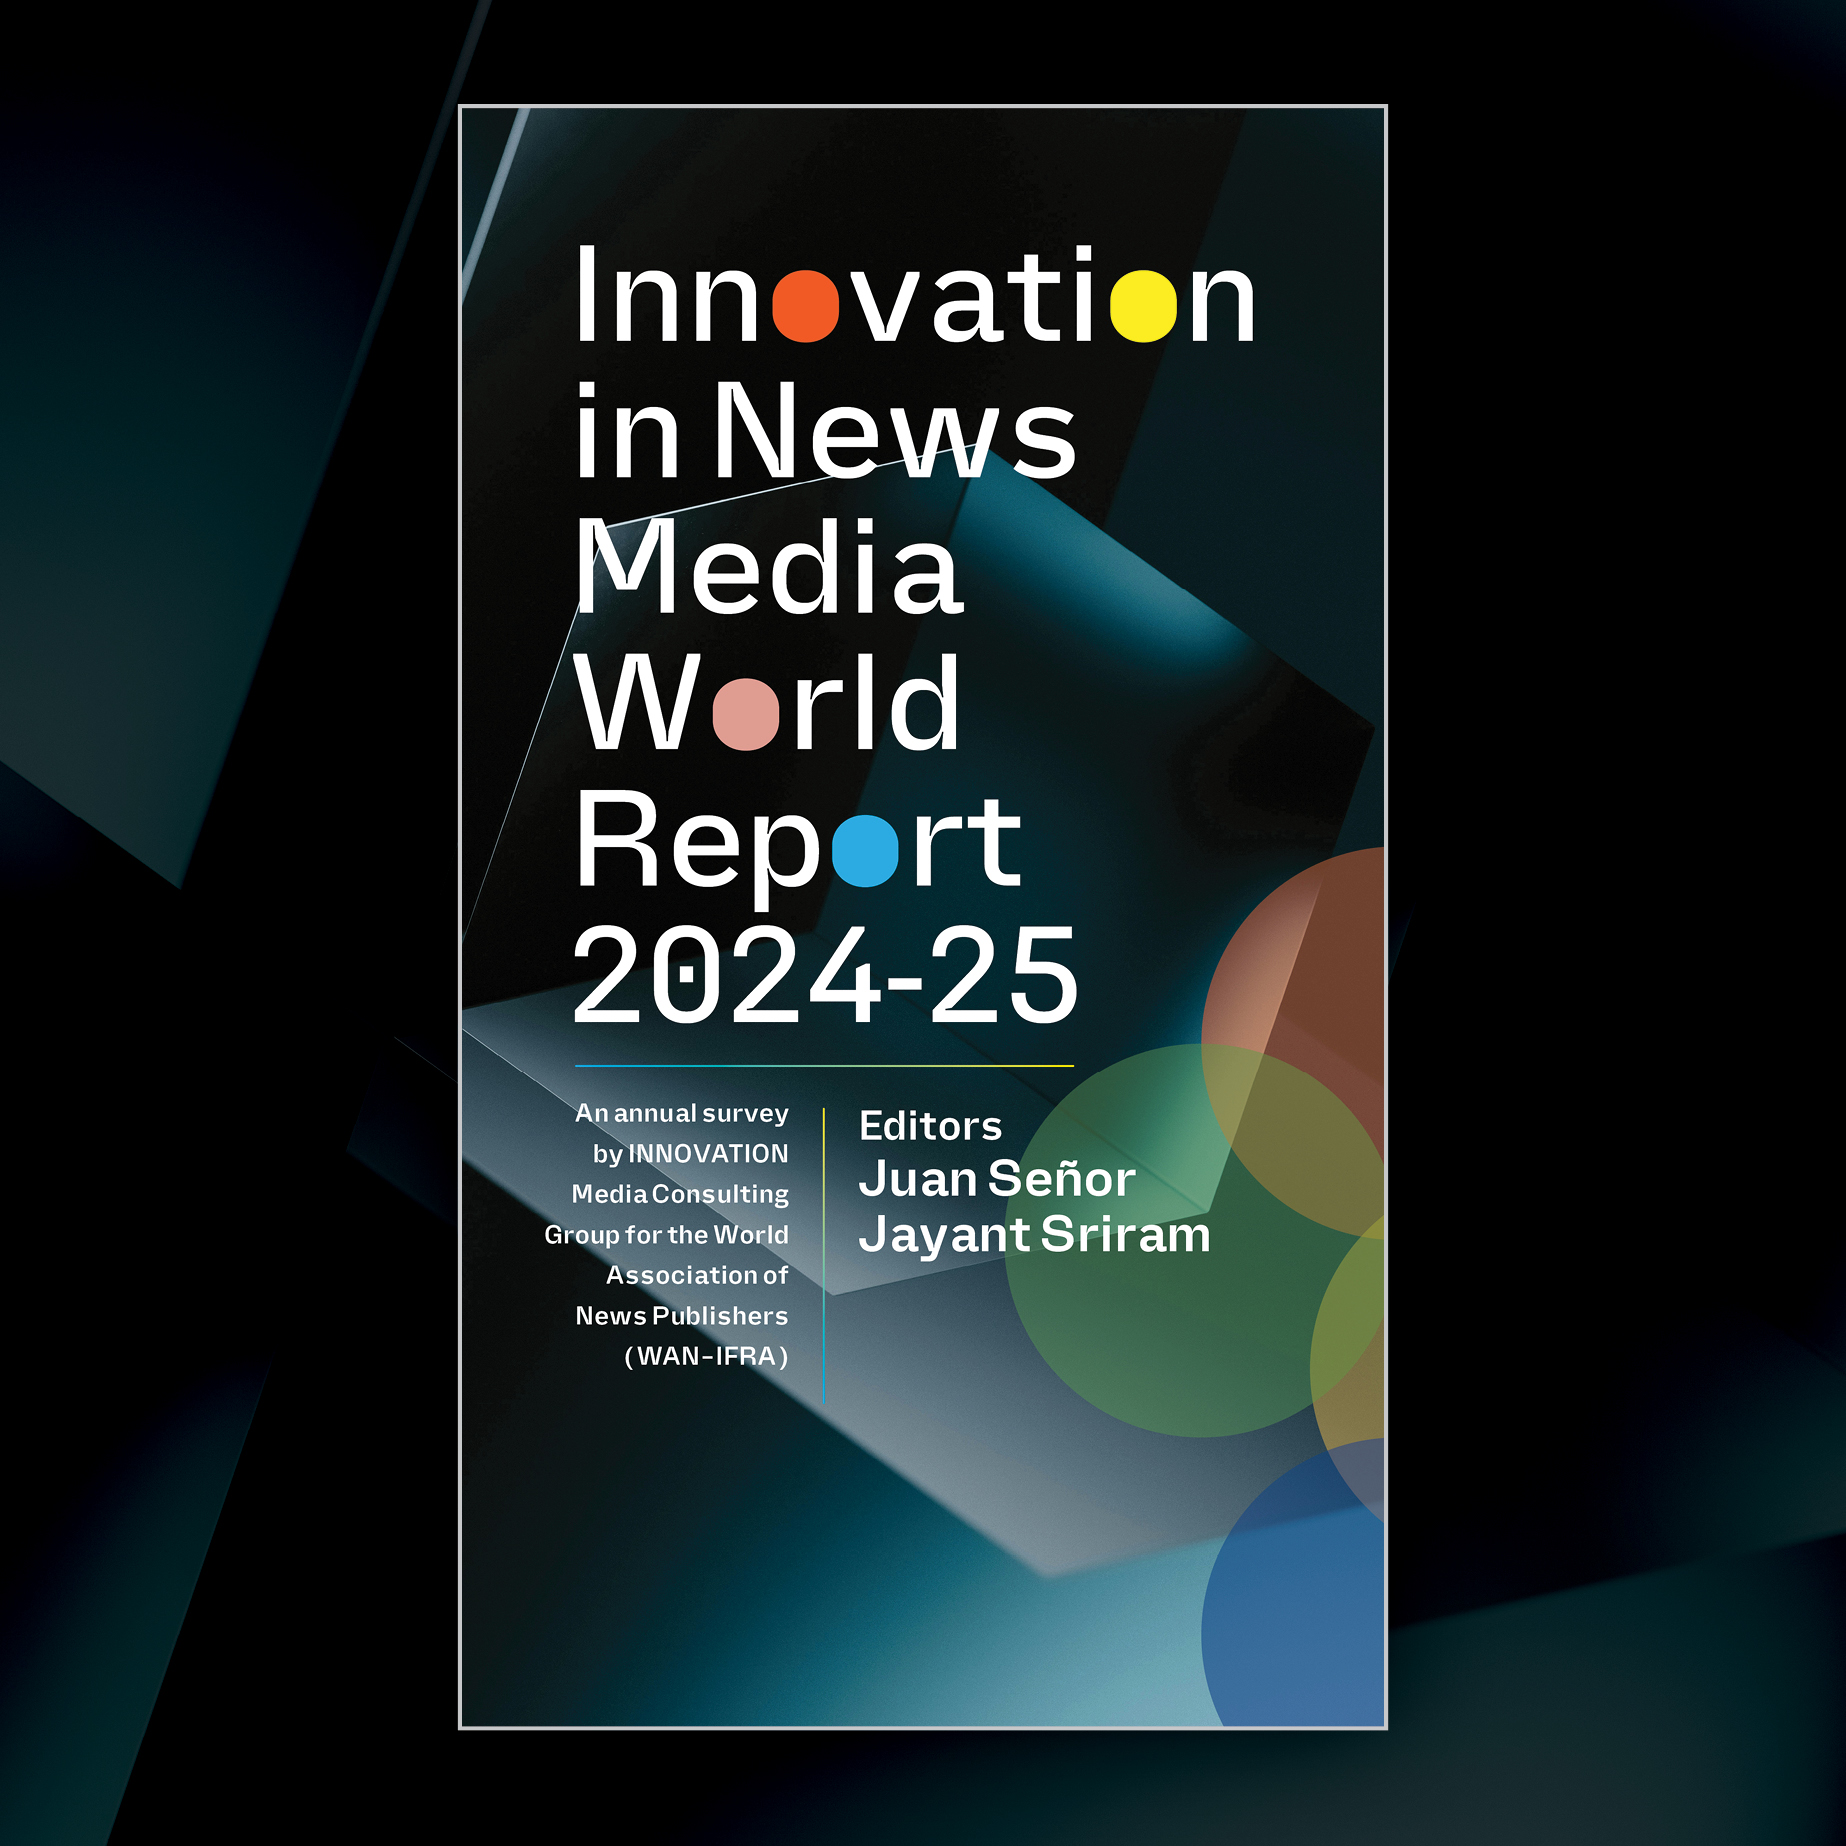 INNOVATION IN NEWS MEDIA 2024-2025 WORLD REPORT